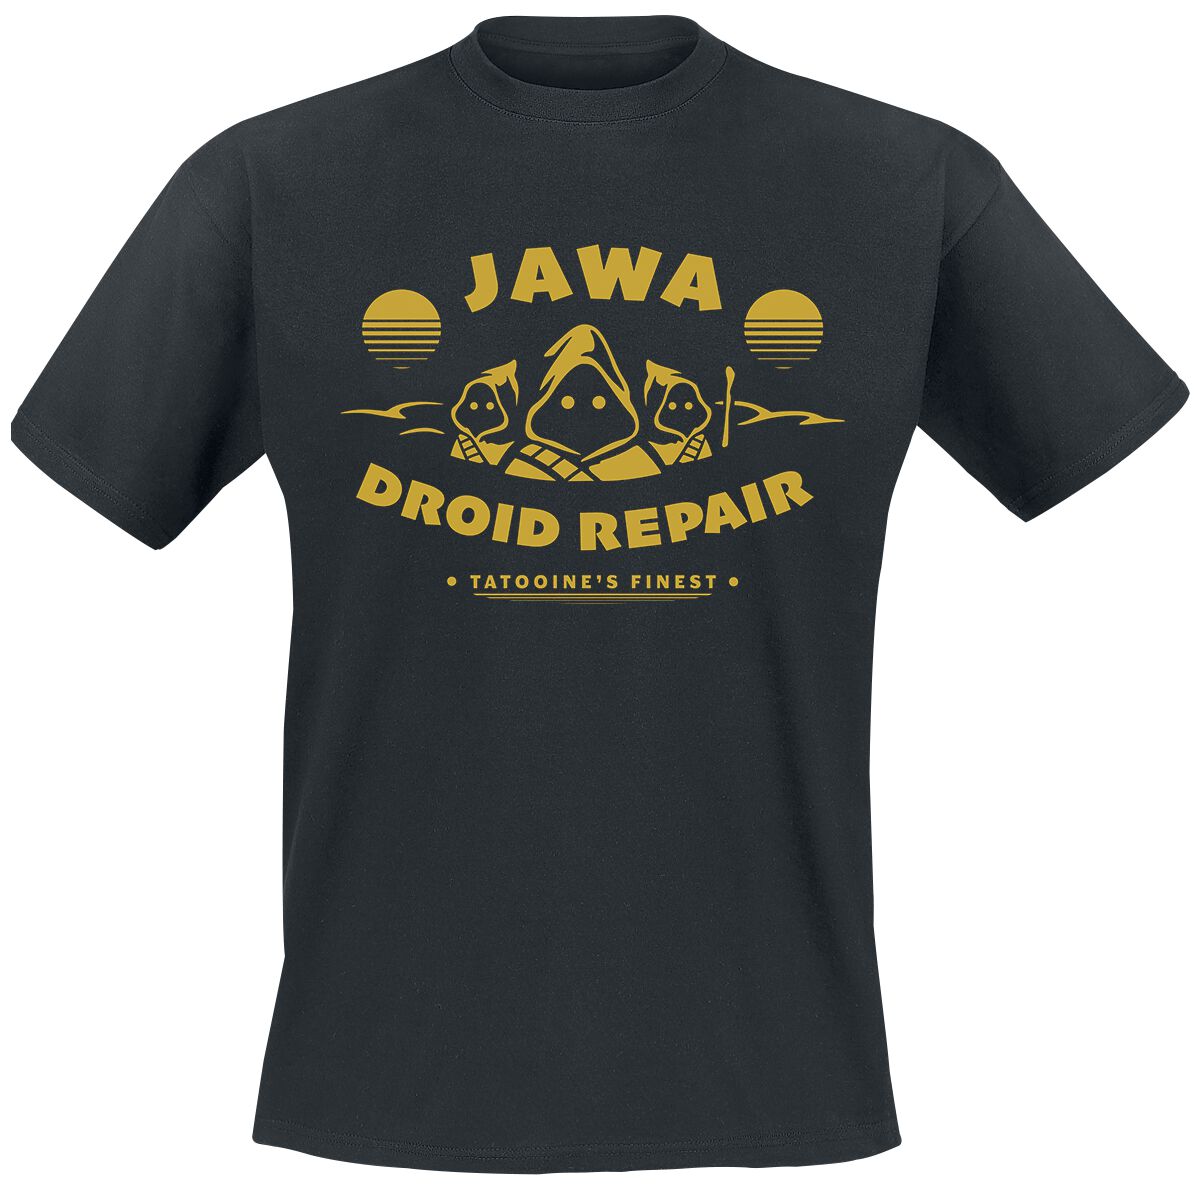 Star Wars T-Shirt - Jawa Droid Repair - S bis L - für Männer - Größe S - schwarz  - Lizenzierter Fanartikel